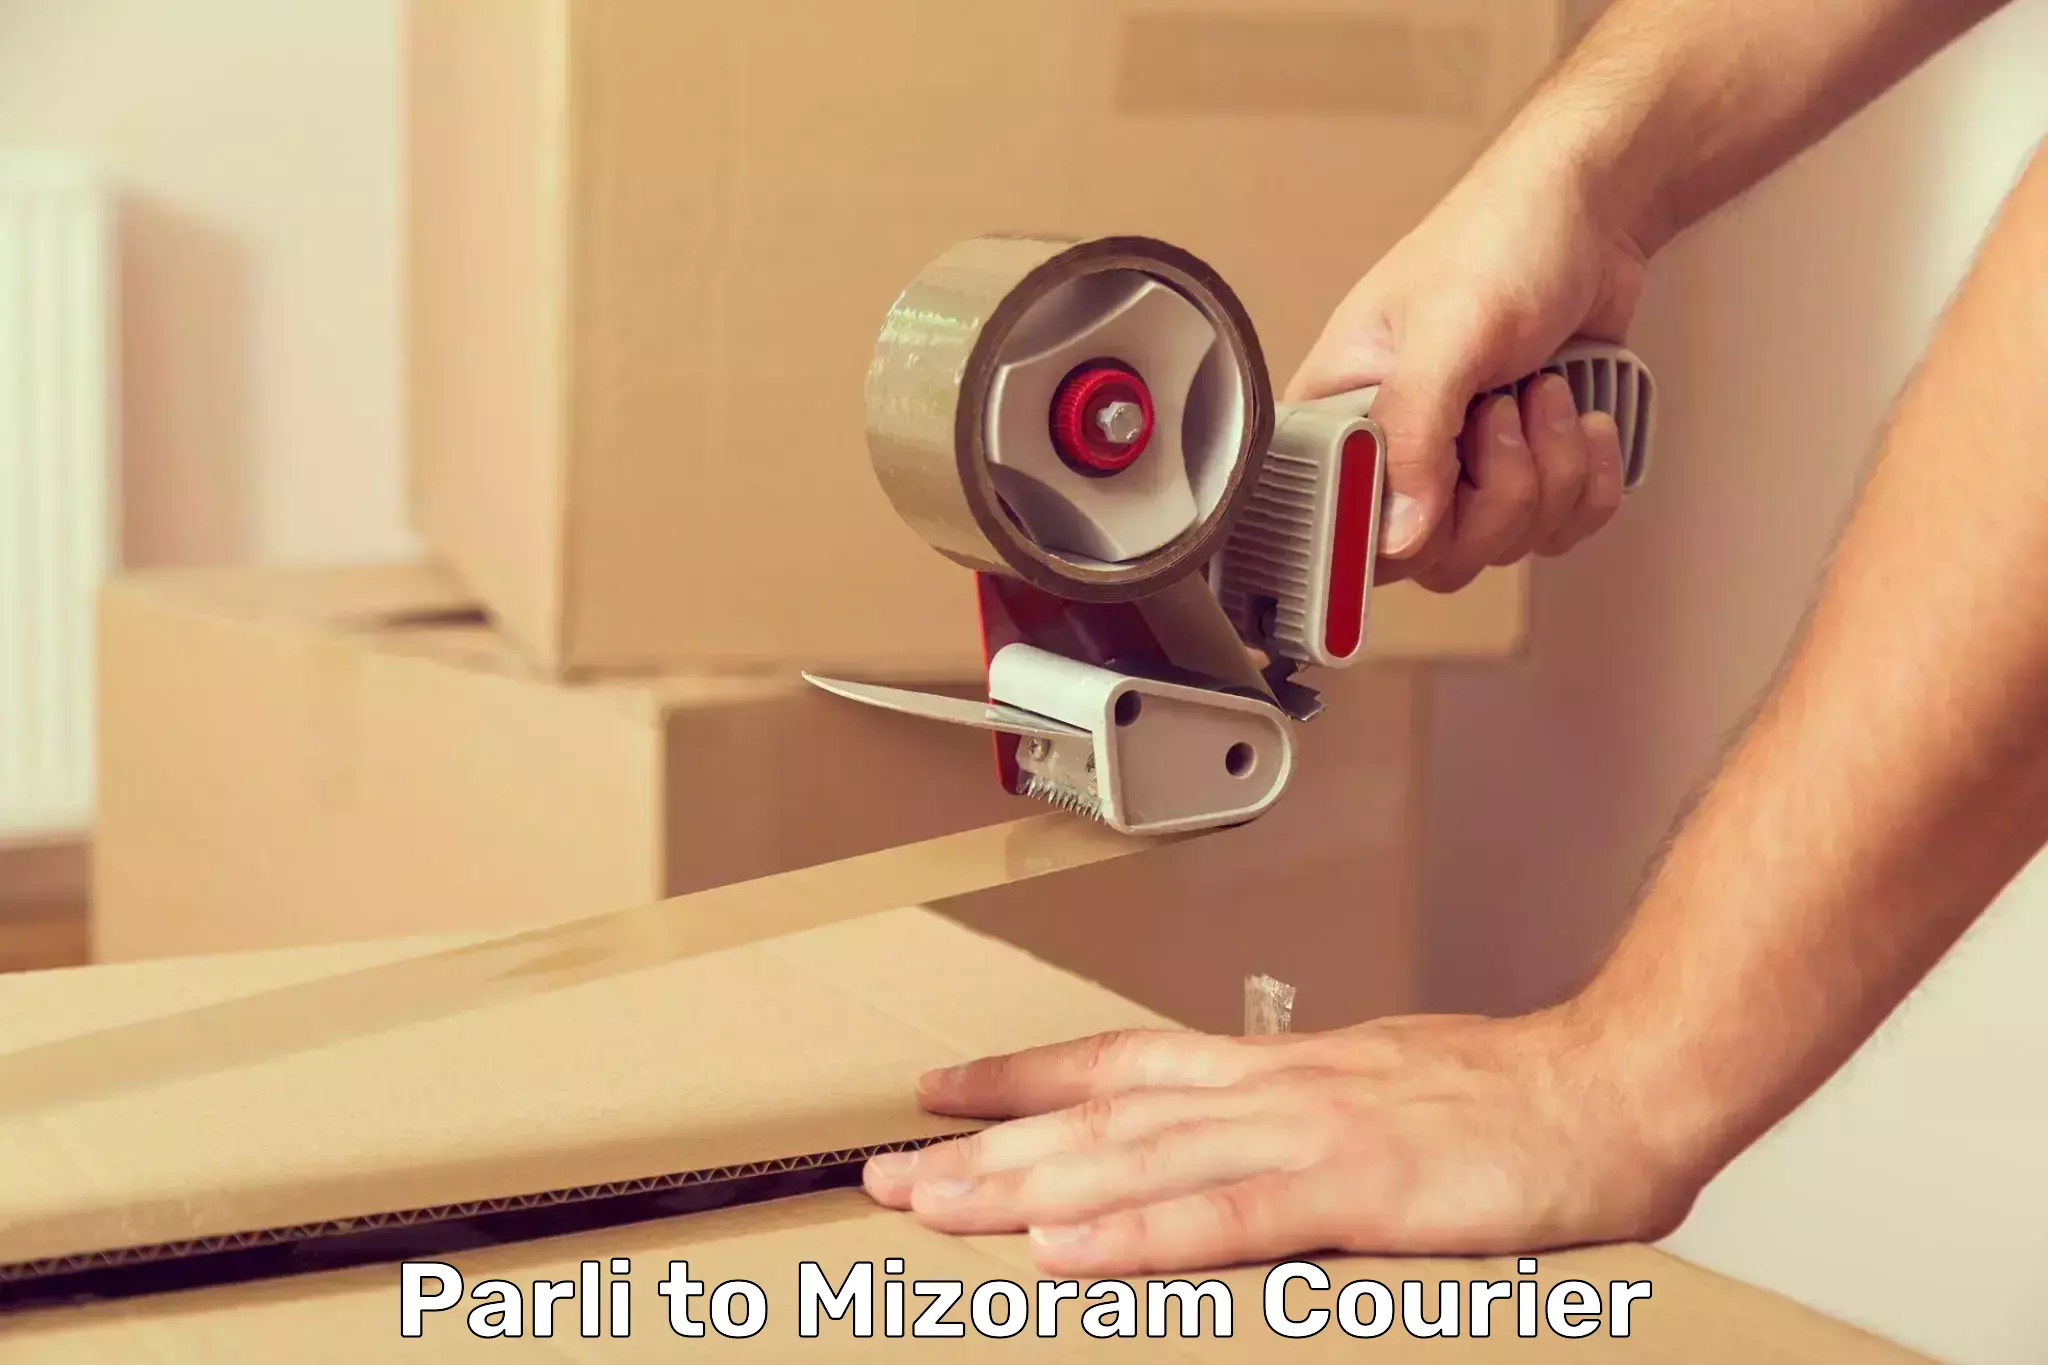 Courier app Parli to Mizoram